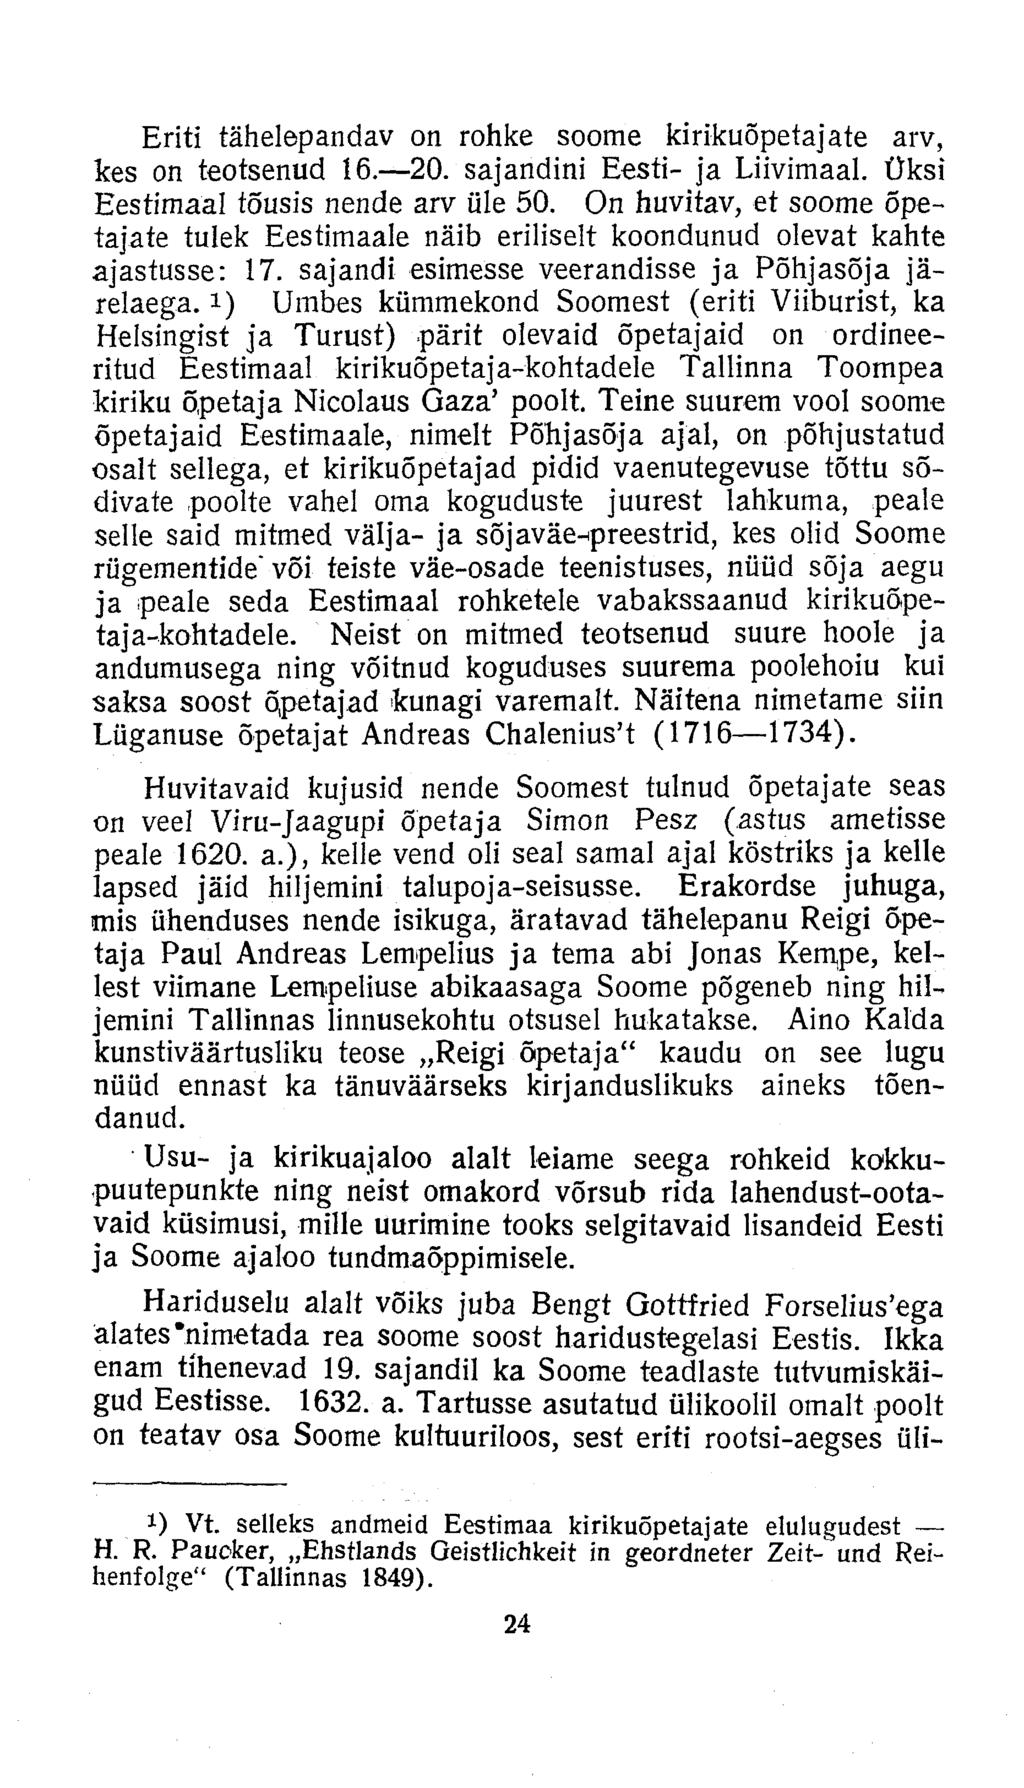 Eriti tähelepandav on rohke soome kirikuõpetajate arv, kes on teotsenud 16. 20. sajandini Eesti- ja Liivimaal. Üksi Eestimaal tõusis nende arv üle 50.